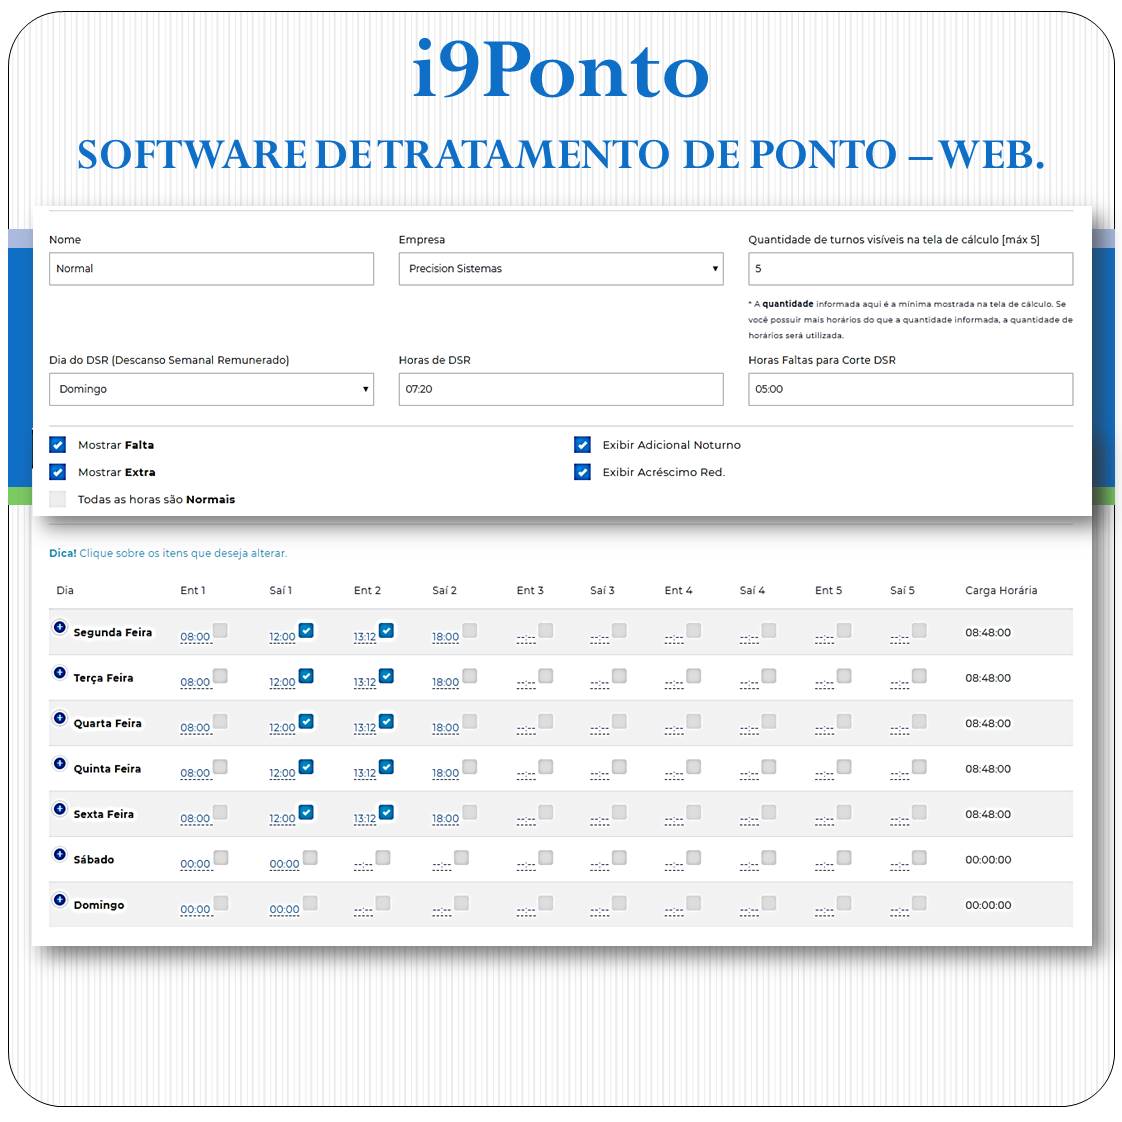 Software de Tratamento de Ponto Web - i9Ponto + REP-P